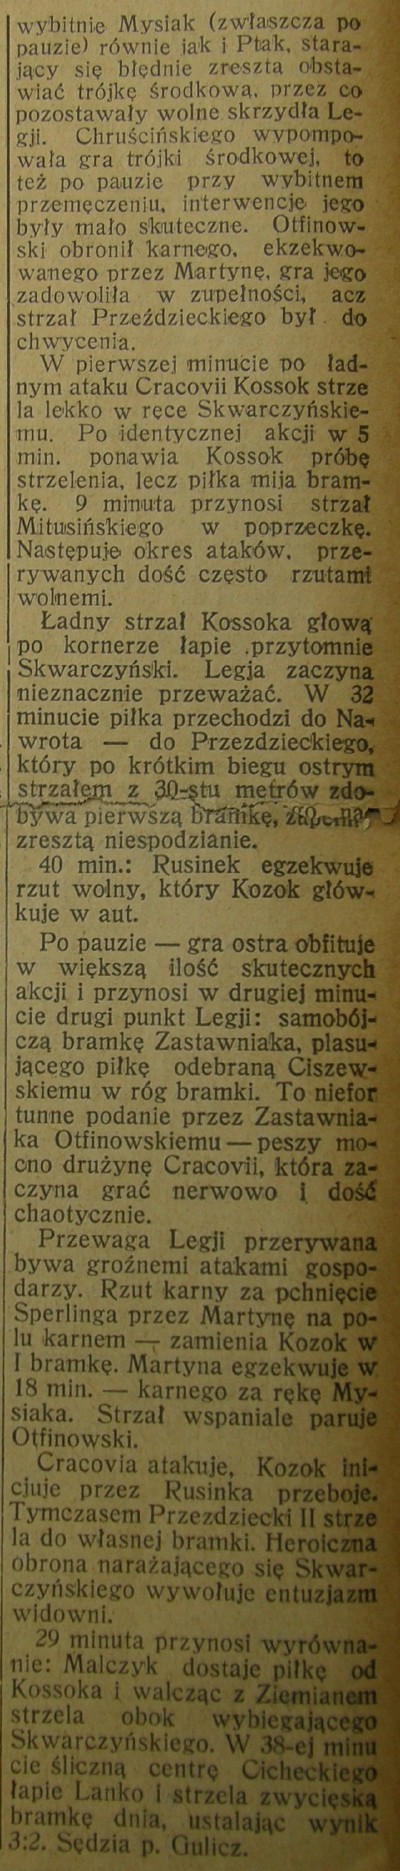 Relacja z meczu w warszawskim tygodniku Przegląd Sportowy